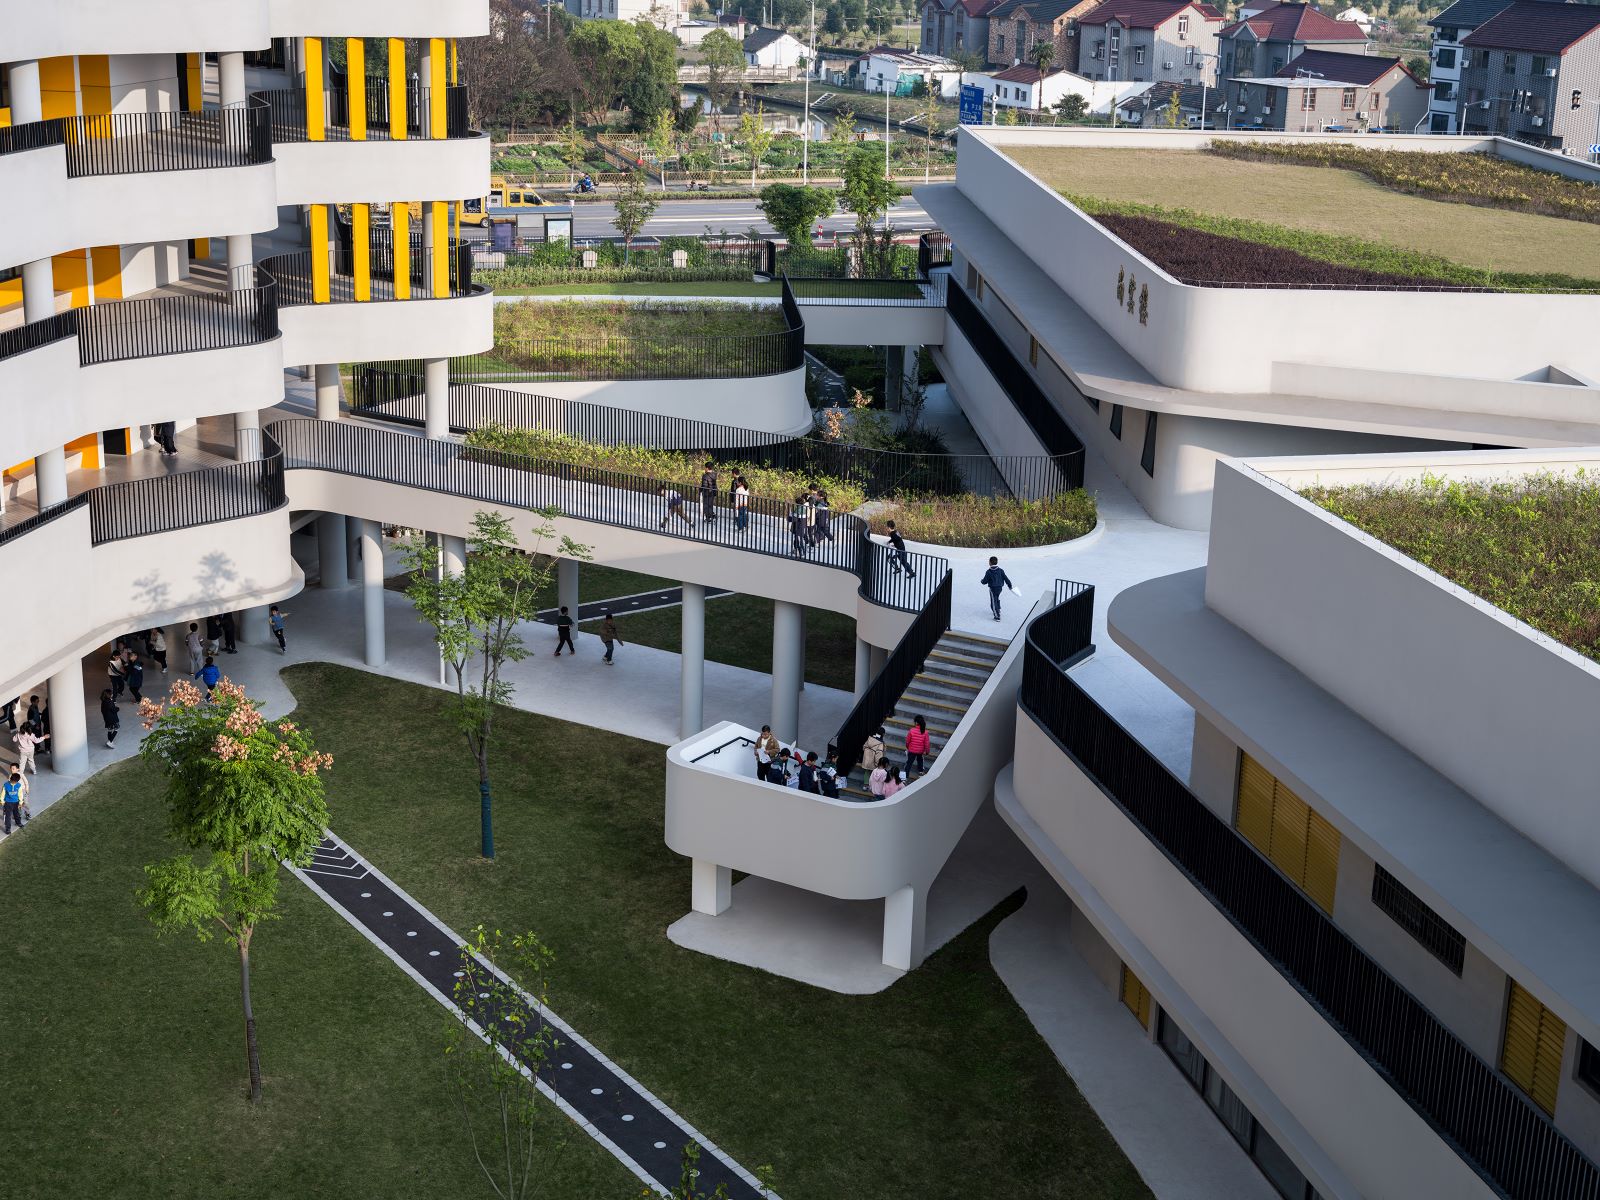 Chonggu Experimental School, Qingpu, by BAU (Brearley Architects + Urbanists)